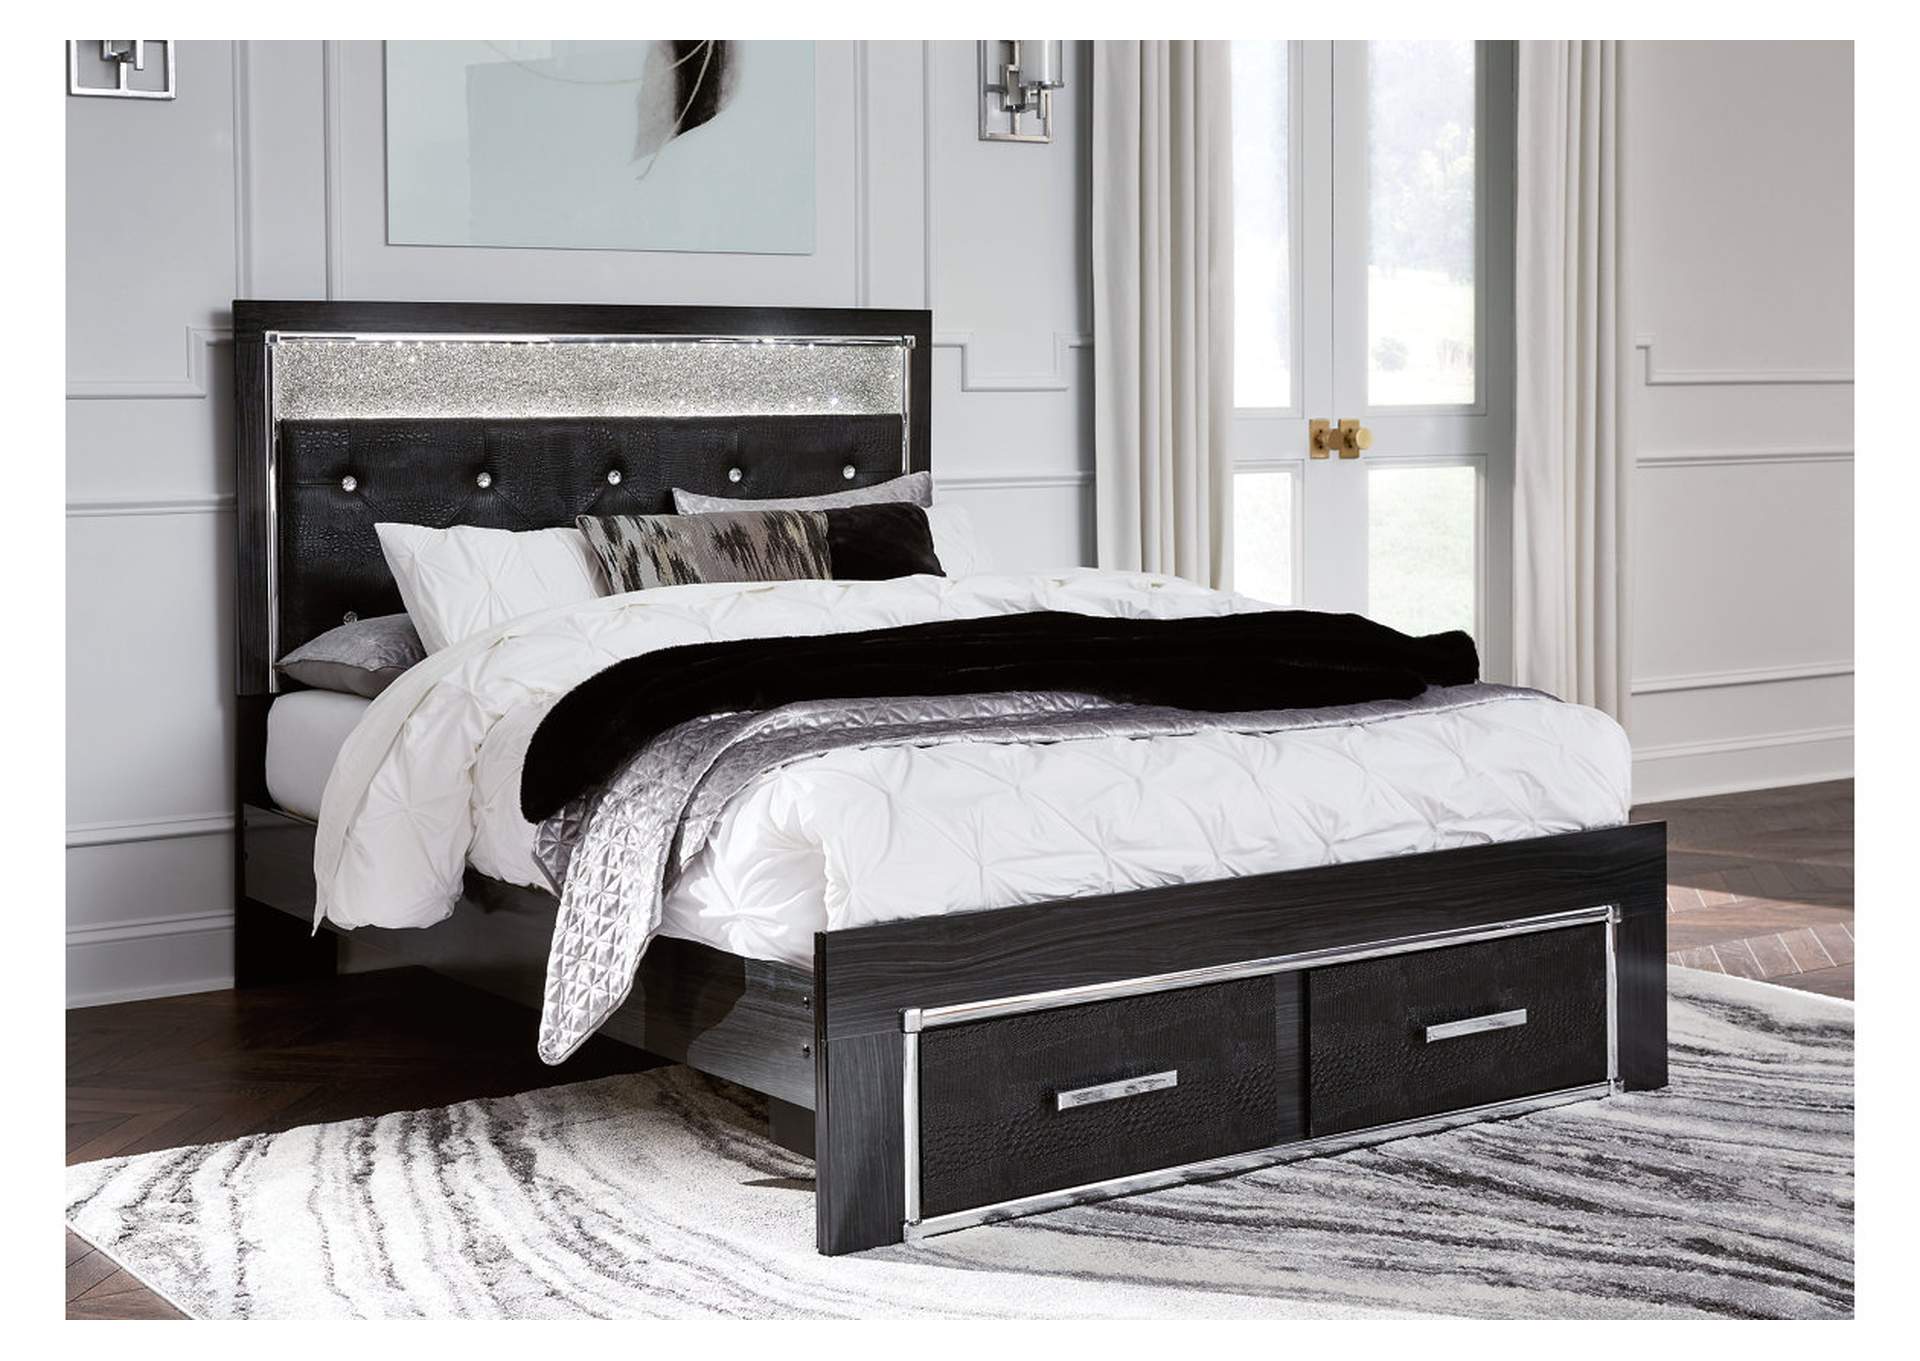 Kaydell King Upholstered Panel Storage Platform Bed with Dresser,Signature Design By Ashley